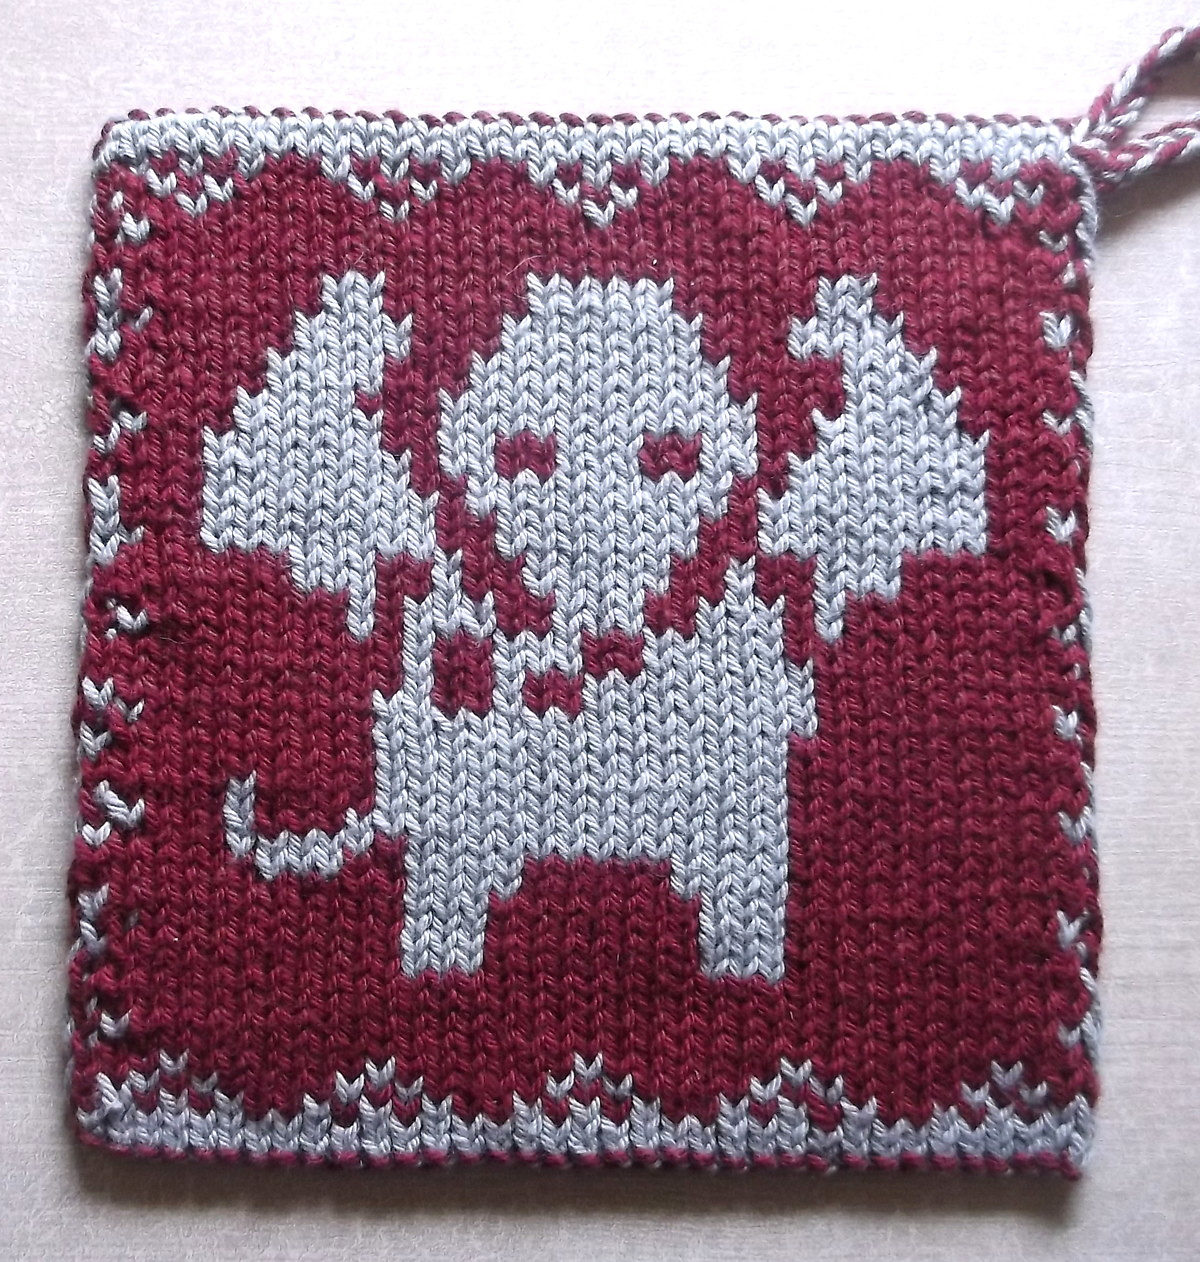 Free Knitting Pattern for Elephant Pot Holder